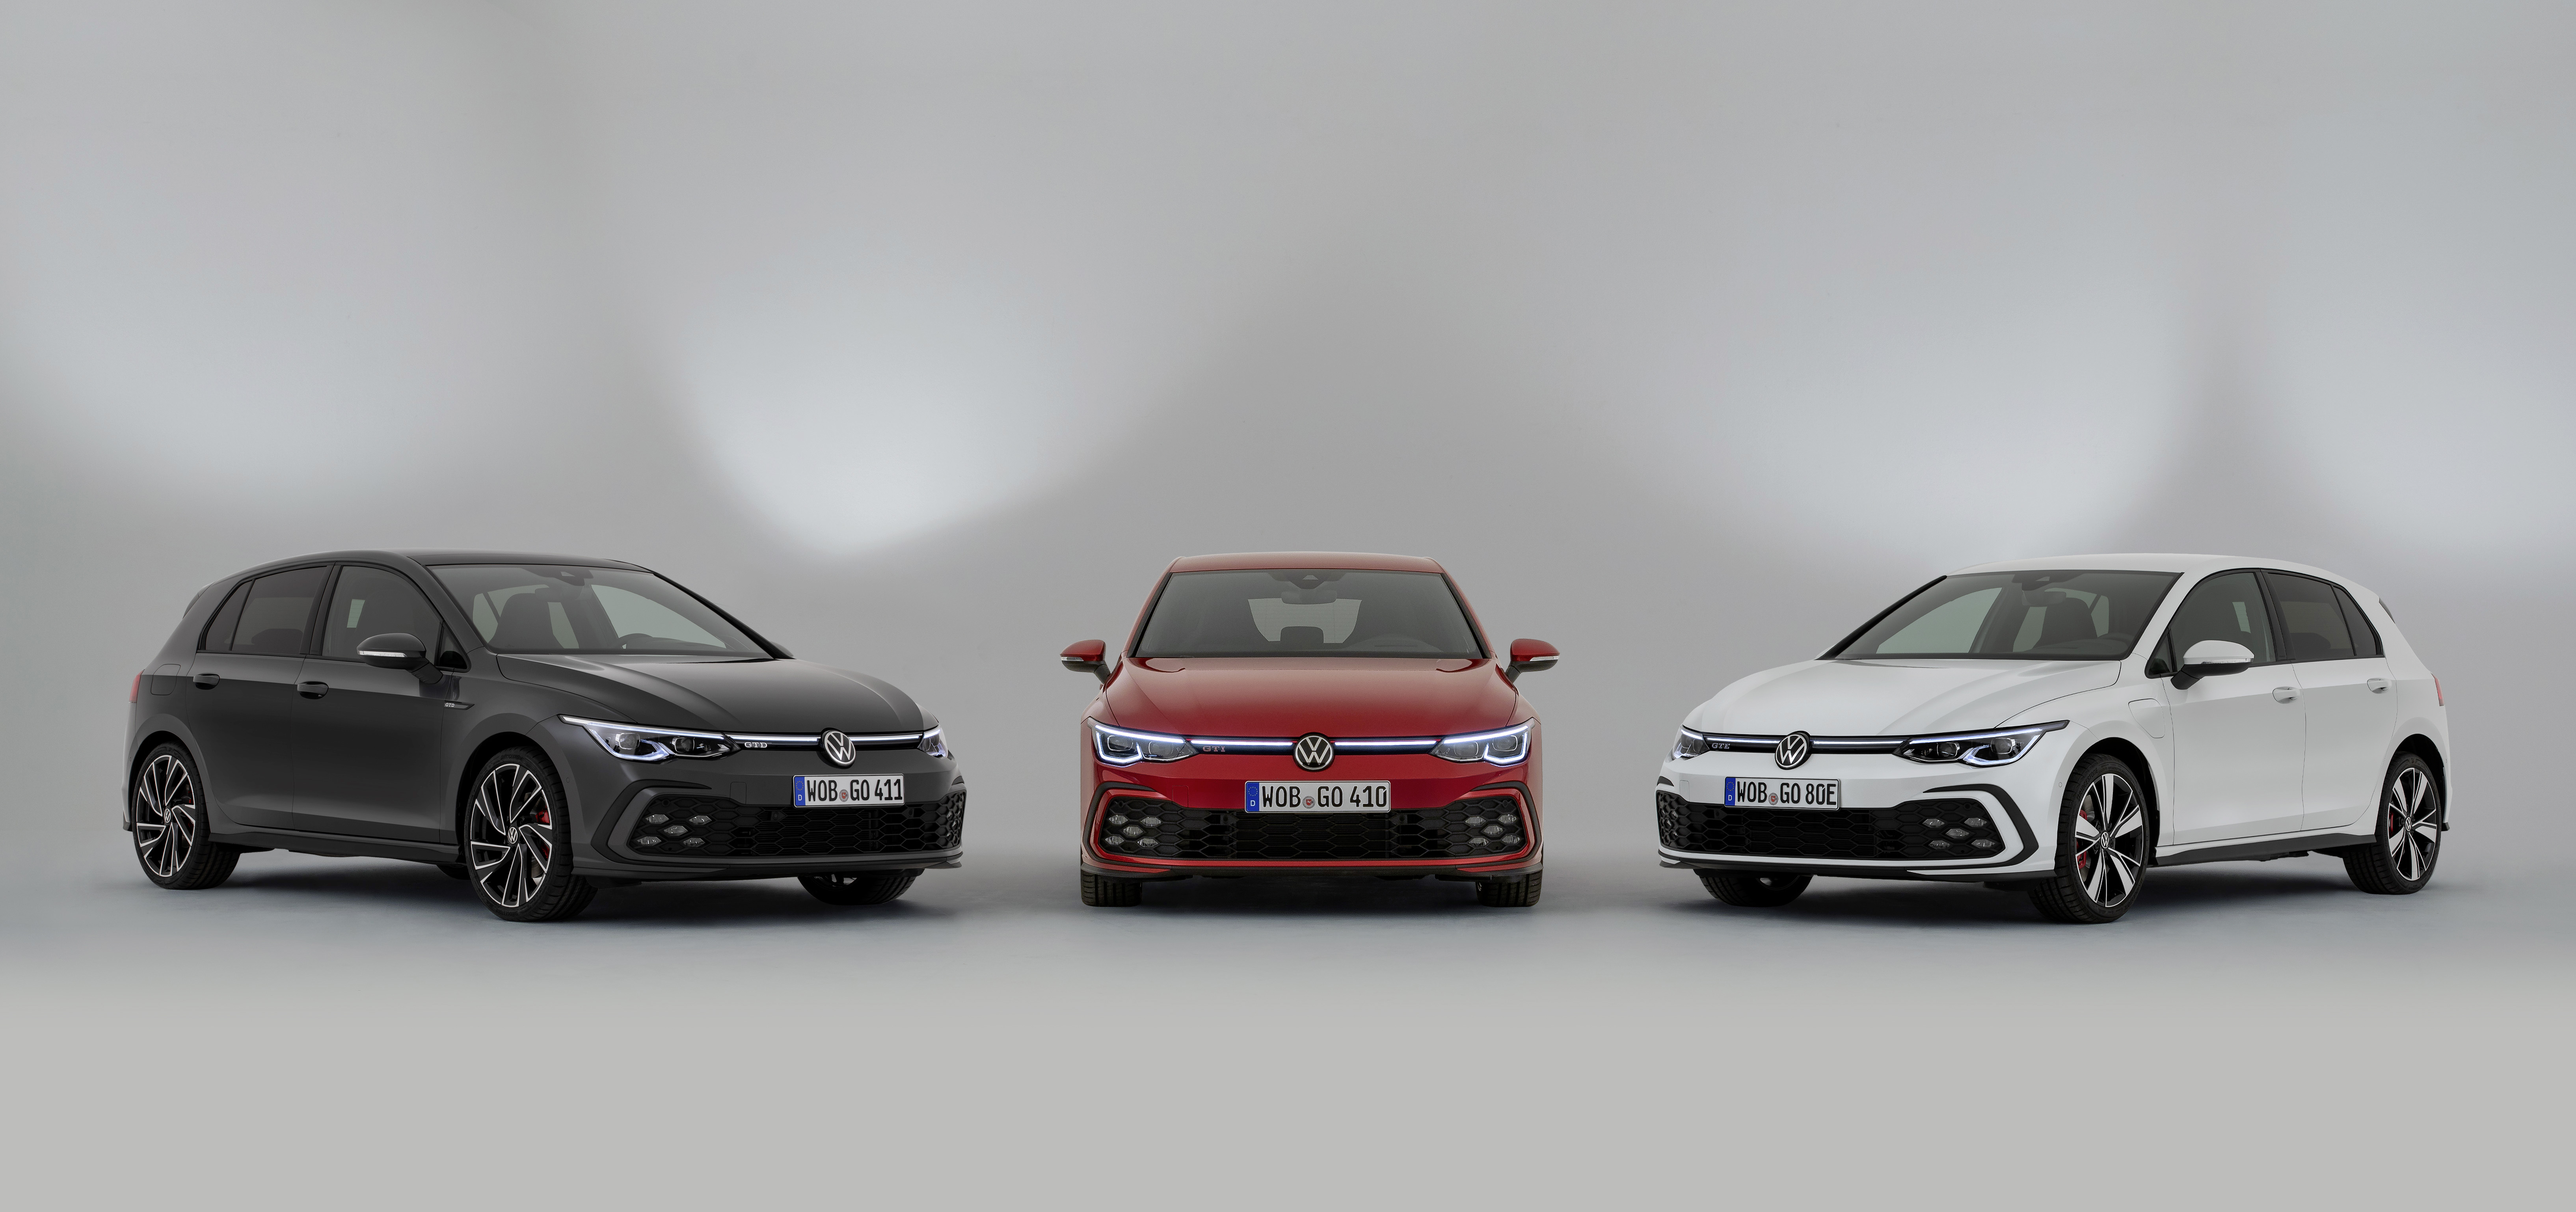 Volkswagen Releases More Details on 8th Gen Golf